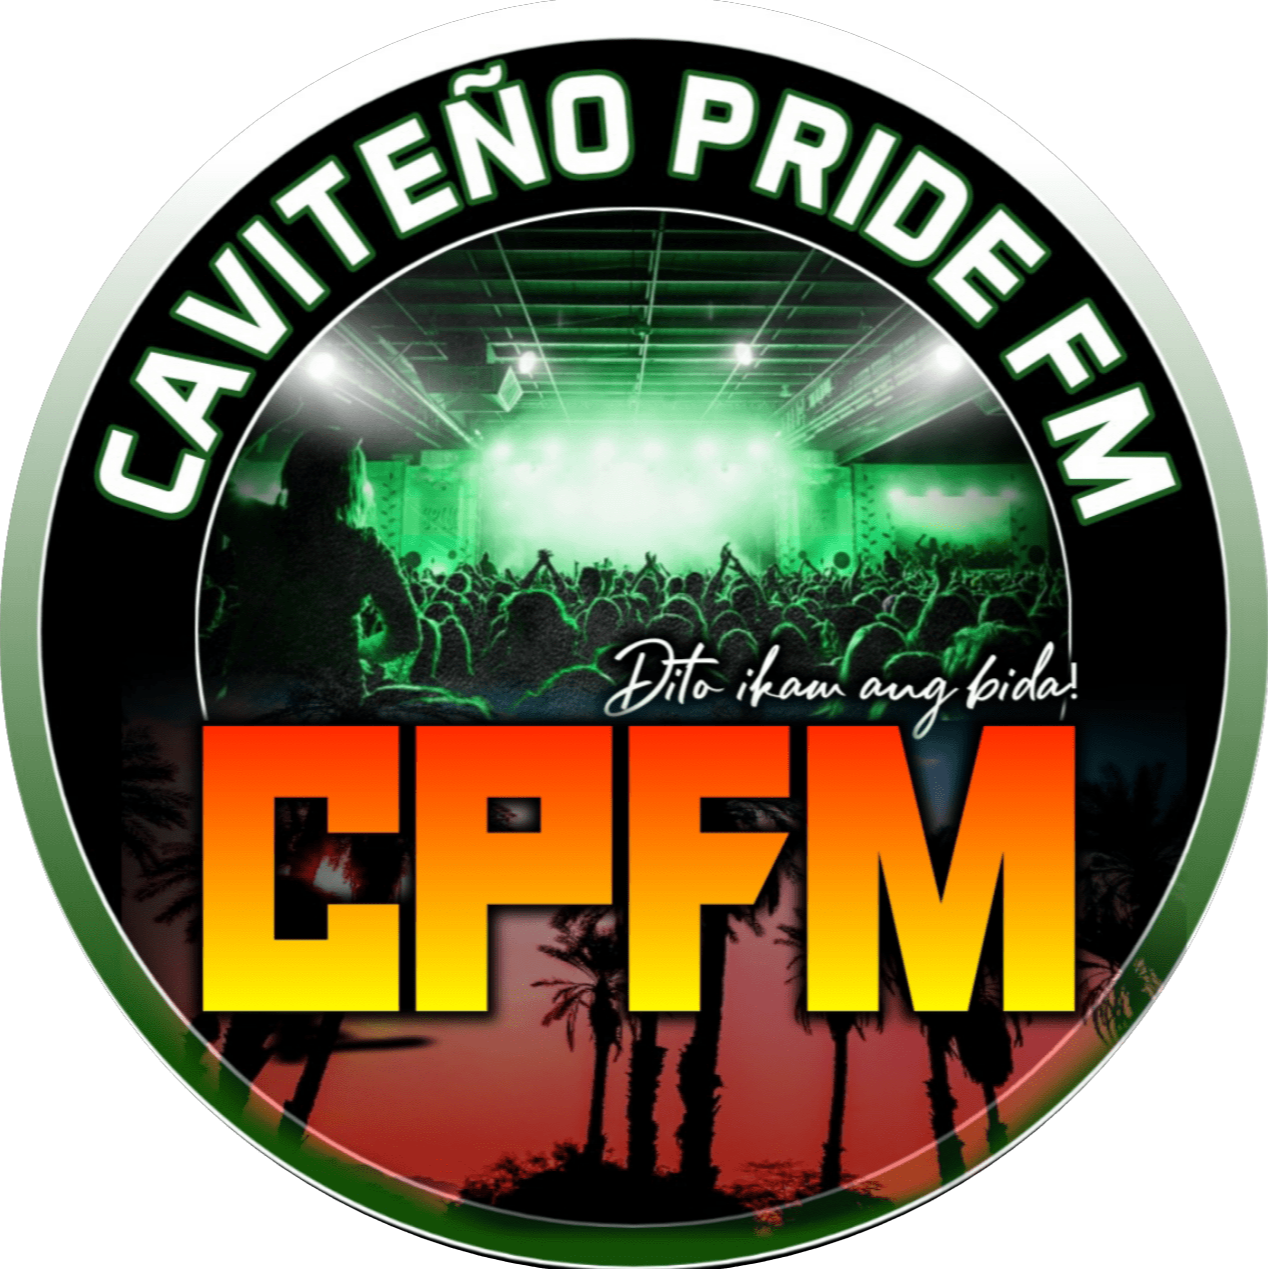 Caviteño pride fm